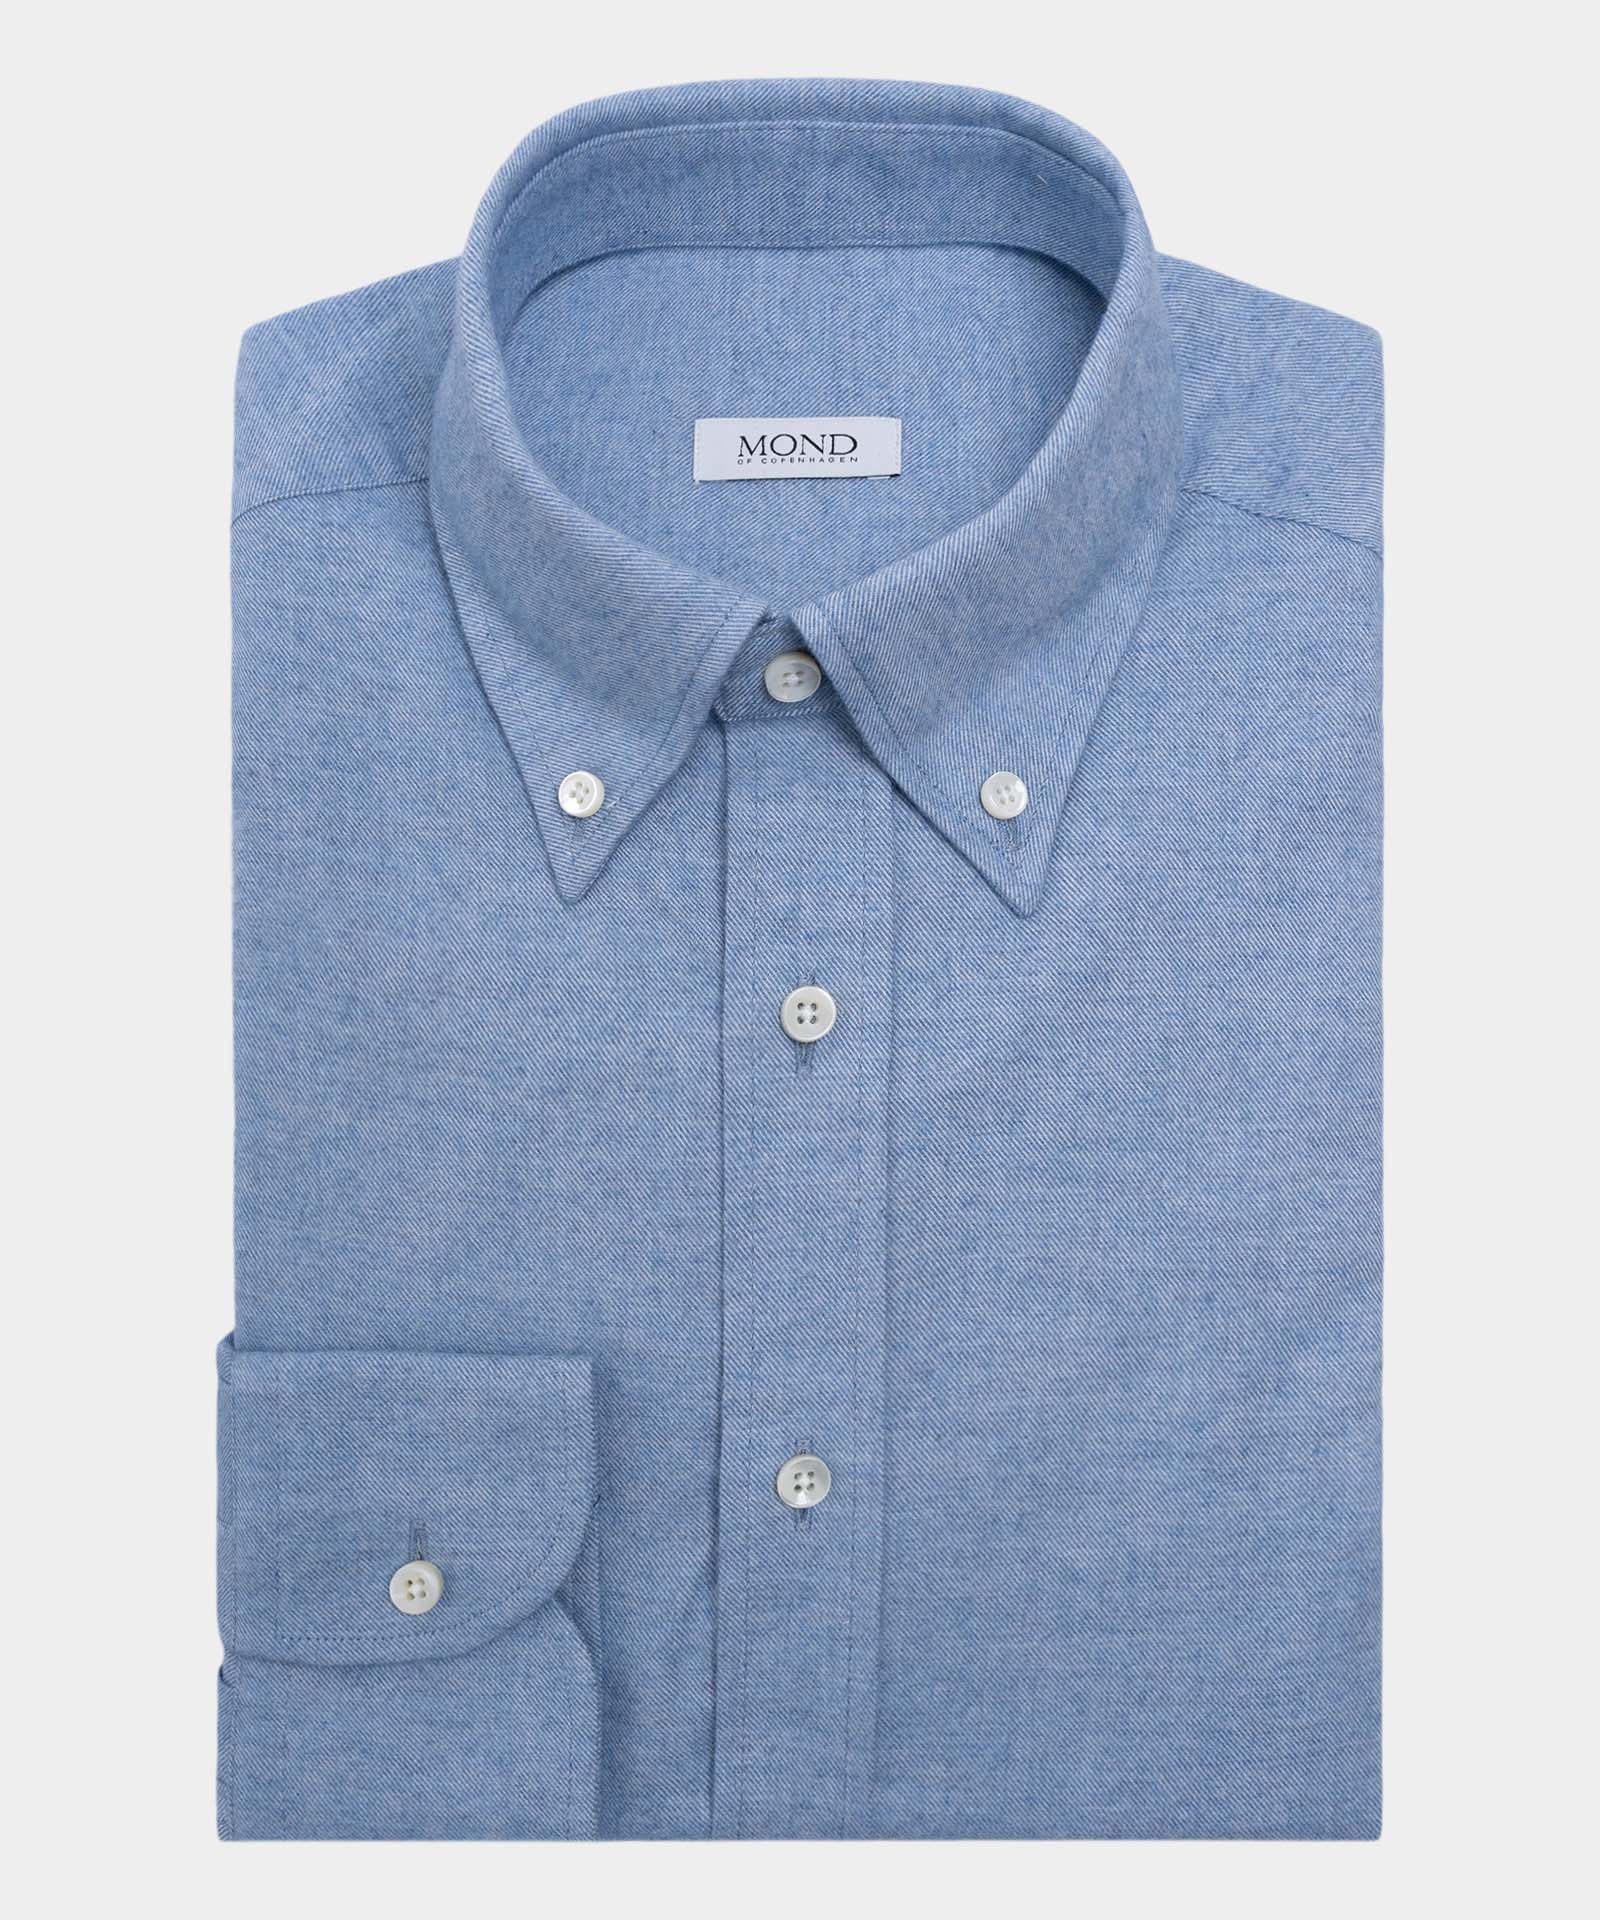 Light Blue Kashco cotton and cashmere custom made shirt by mond of copenhagen